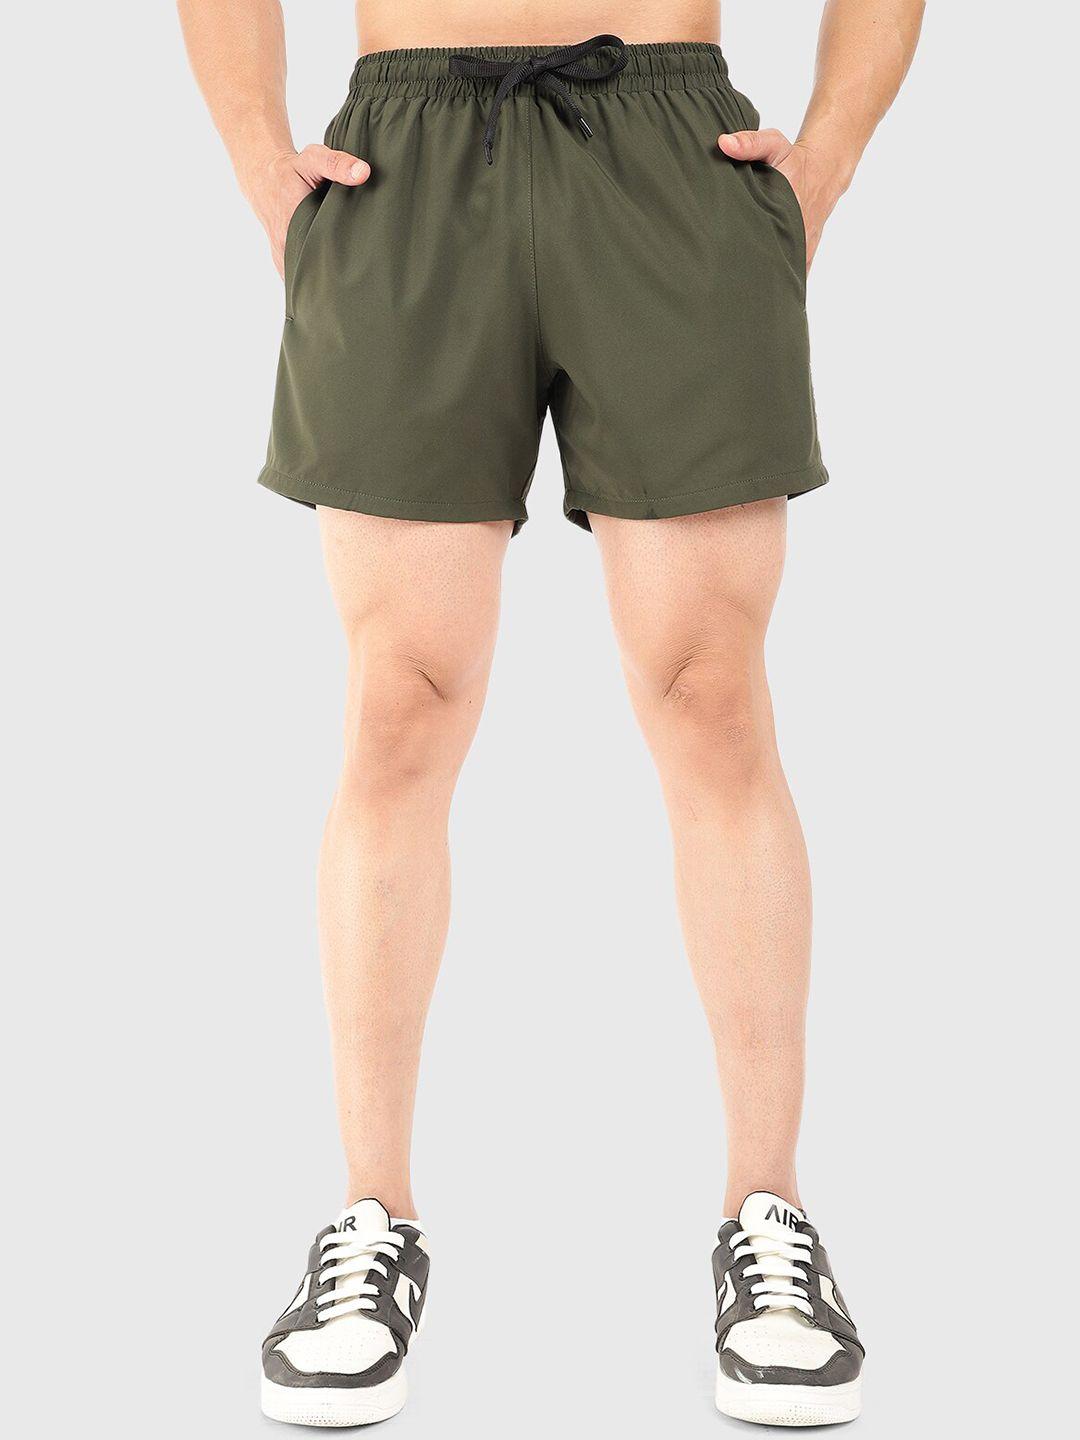 fuaark men mid-rise dri-fit sports shorts